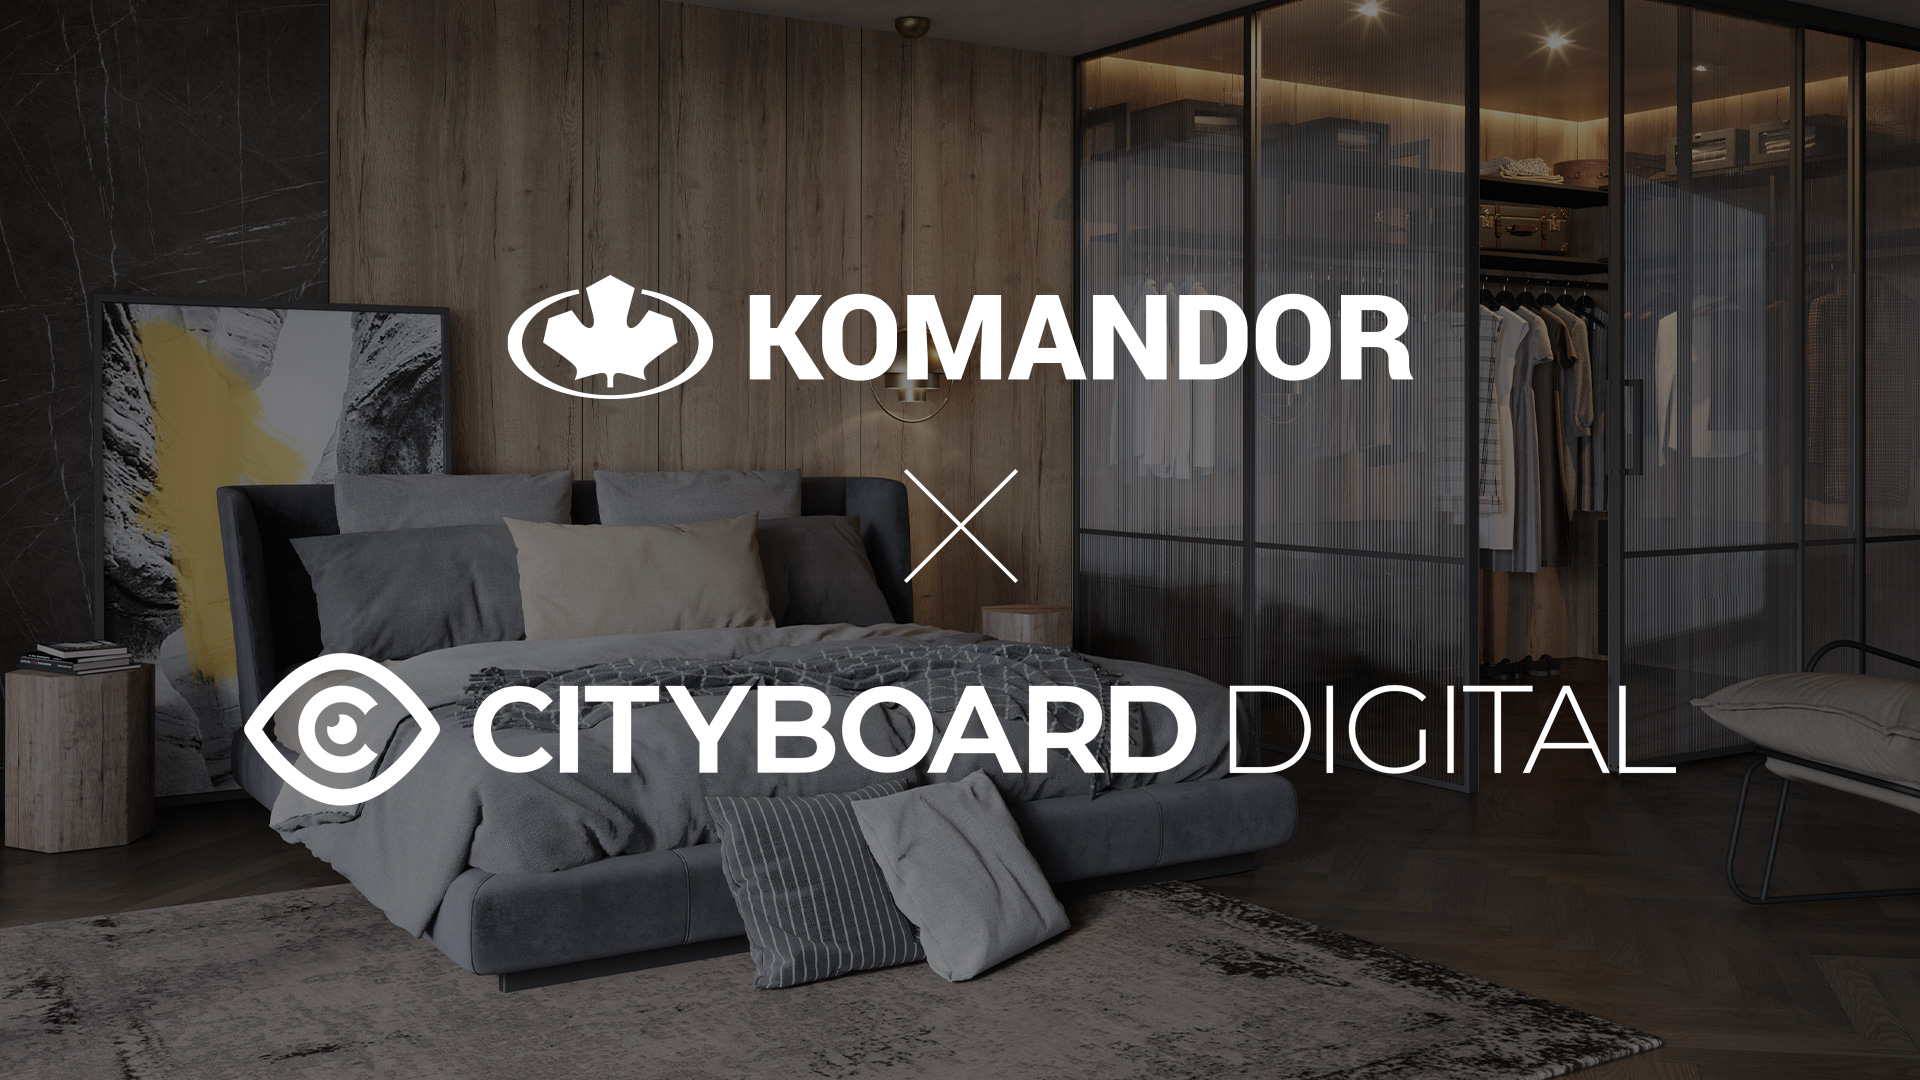 Cityboard Digital dla Komandora  